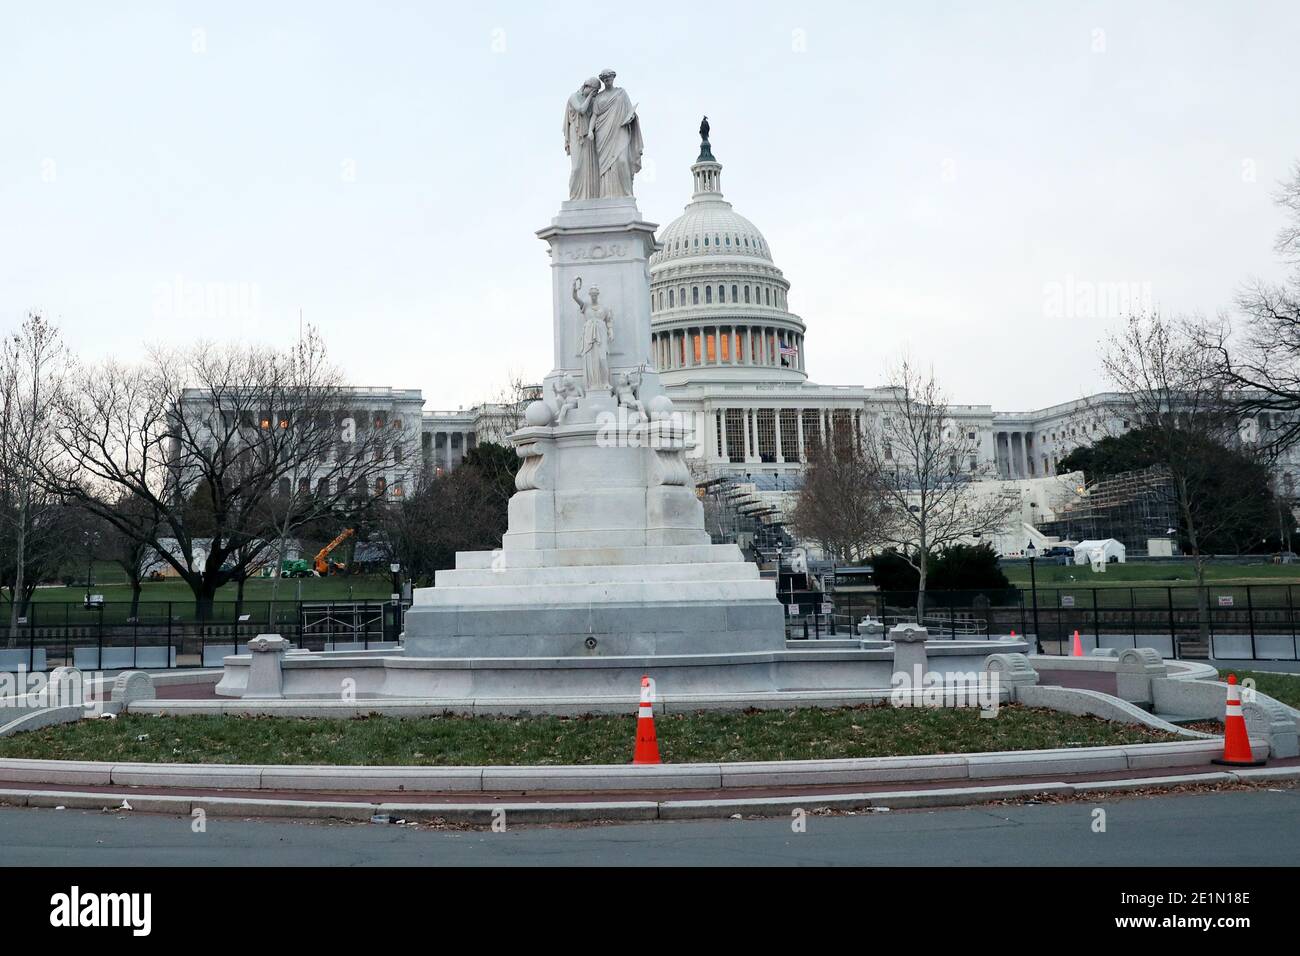 WASHINGTON, D.C. - 8. JANUAR: Blick auf das Friedensdenkmal wie das Kapitolgebäude der Vereinigten Staaten steht jetzt komplett mit nicht-skalierbaren Zäunen und Betonbarrieren, um den Wiedereintritt in das Gebäude zu verhindern, nachdem ein Mob von Donald Trump-Anhängern das US-Kapitol 2 Tage zuvor stürmte. Washington, D.C. am 8. Januar 2021. Quelle: Mpi34/MediaPunch Stockfoto